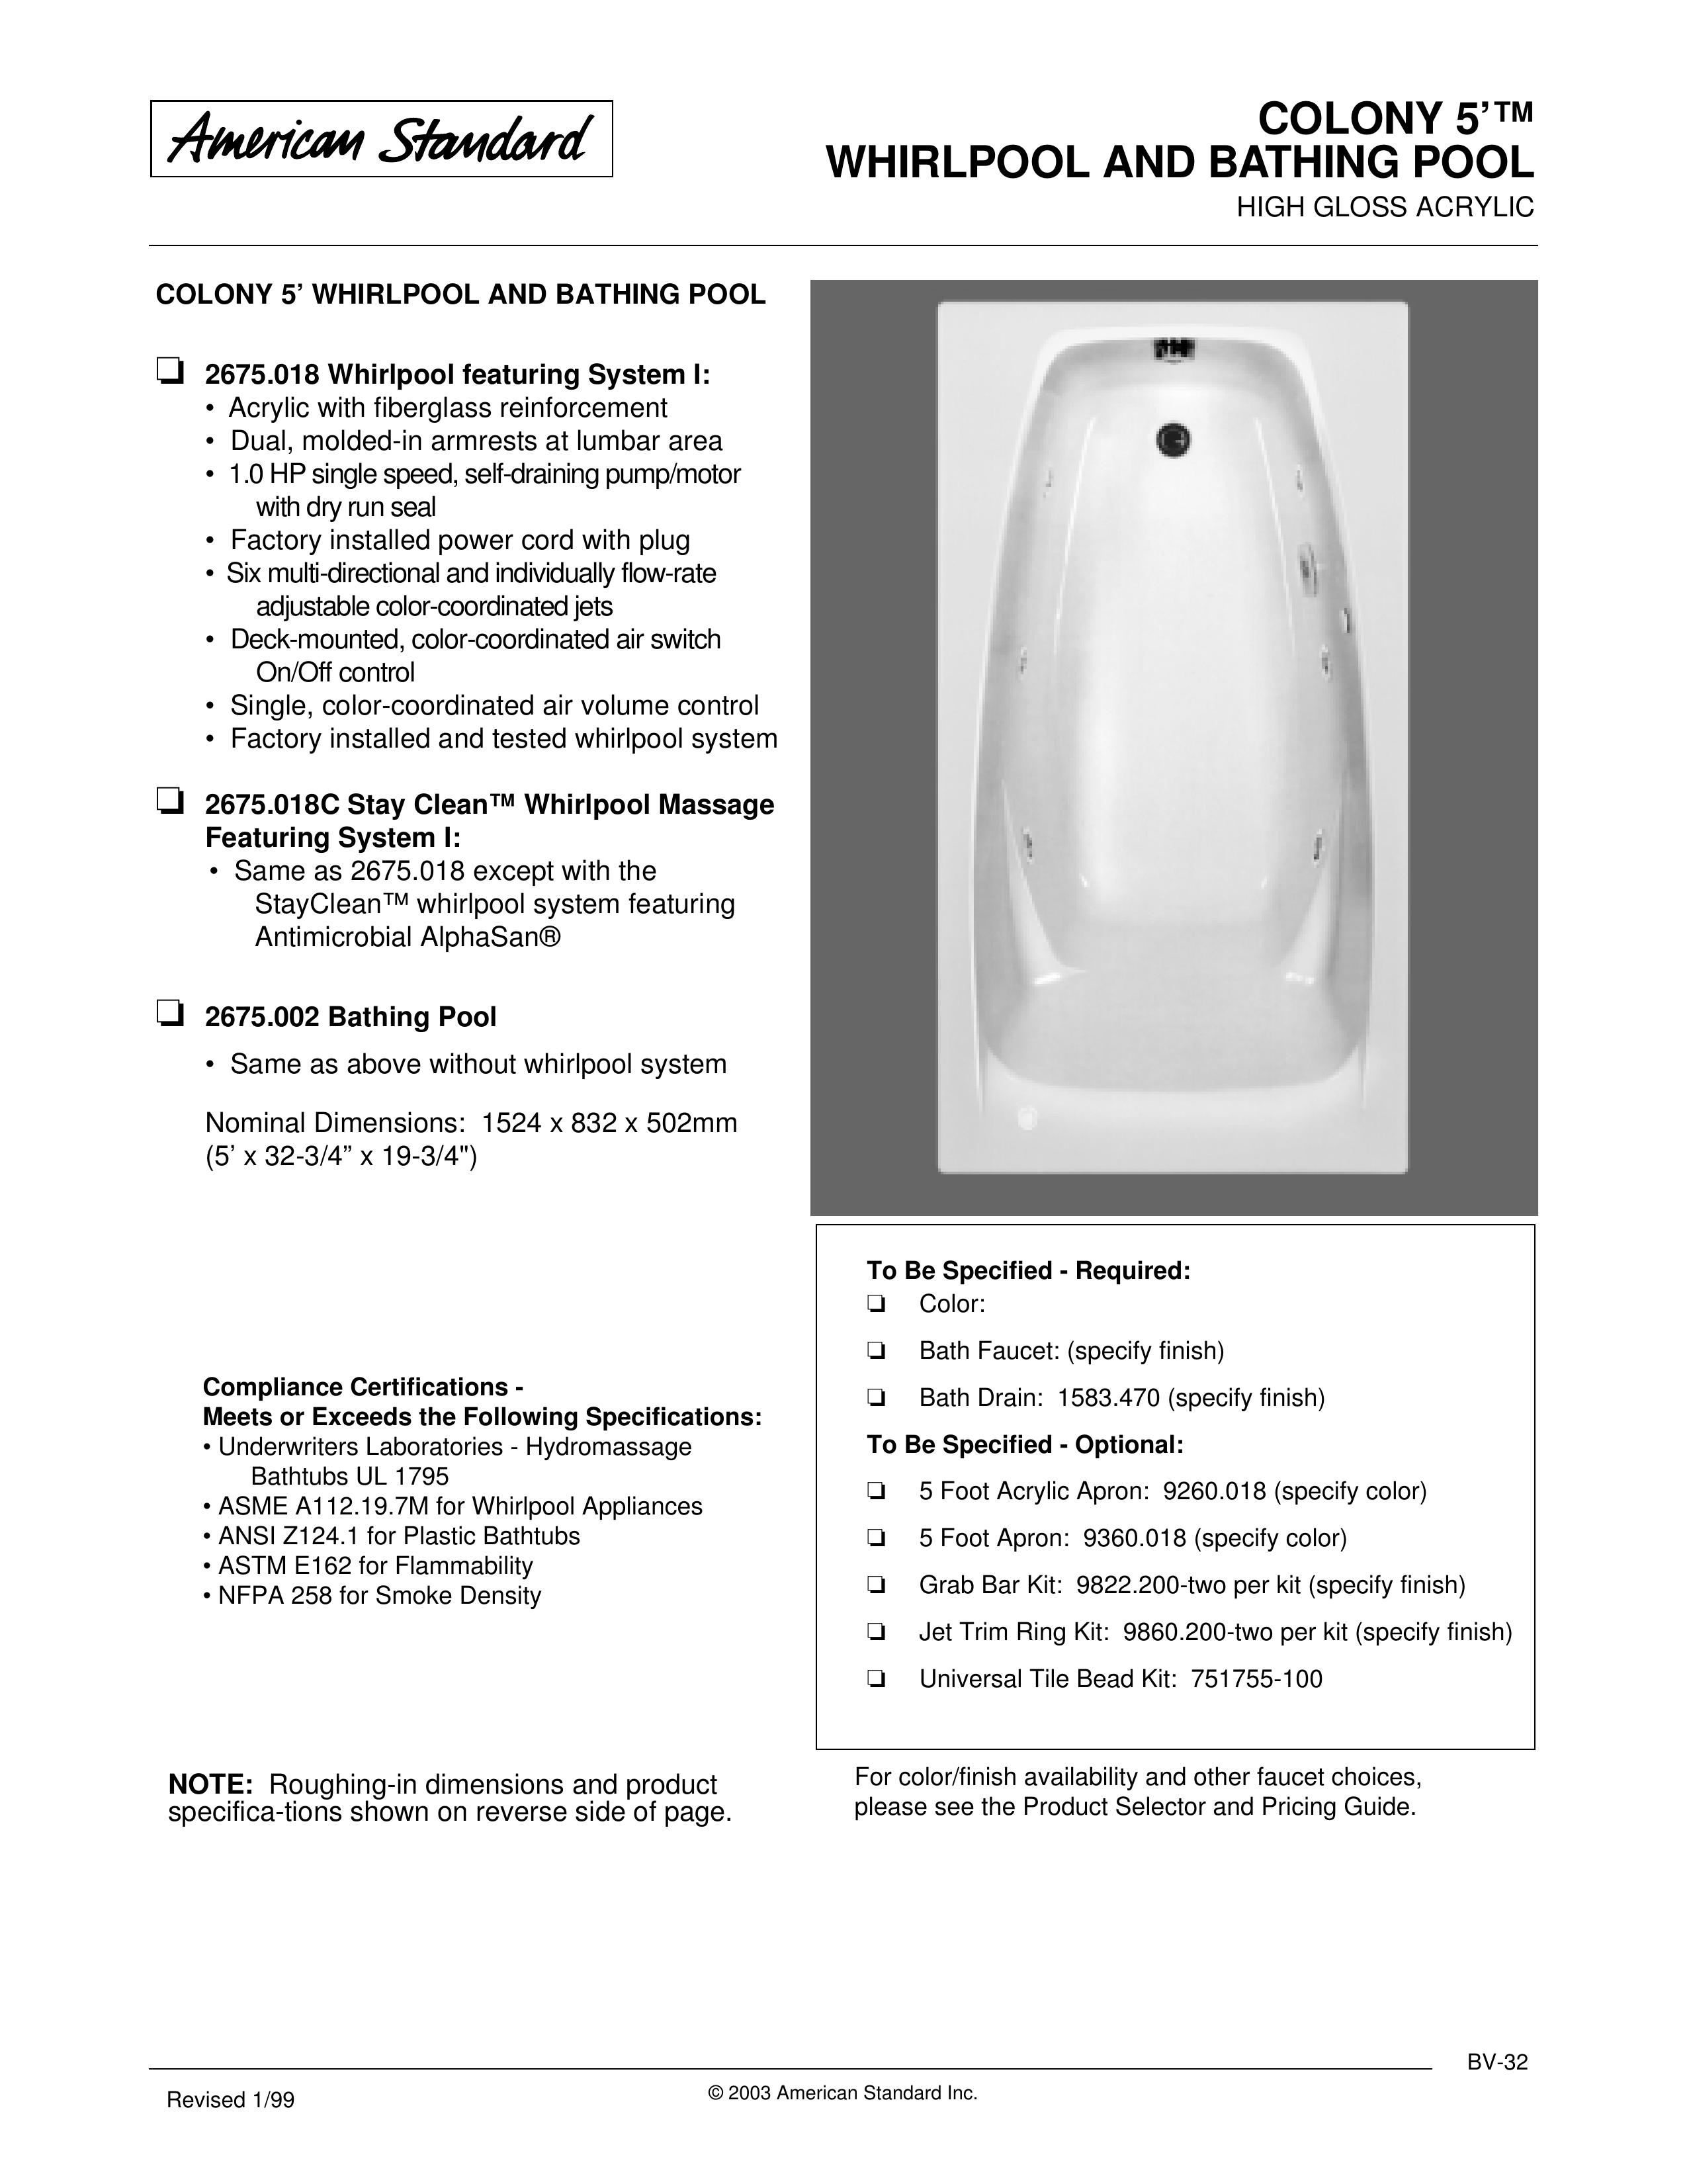 American Standard 1583.470 Hot Tub User Manual